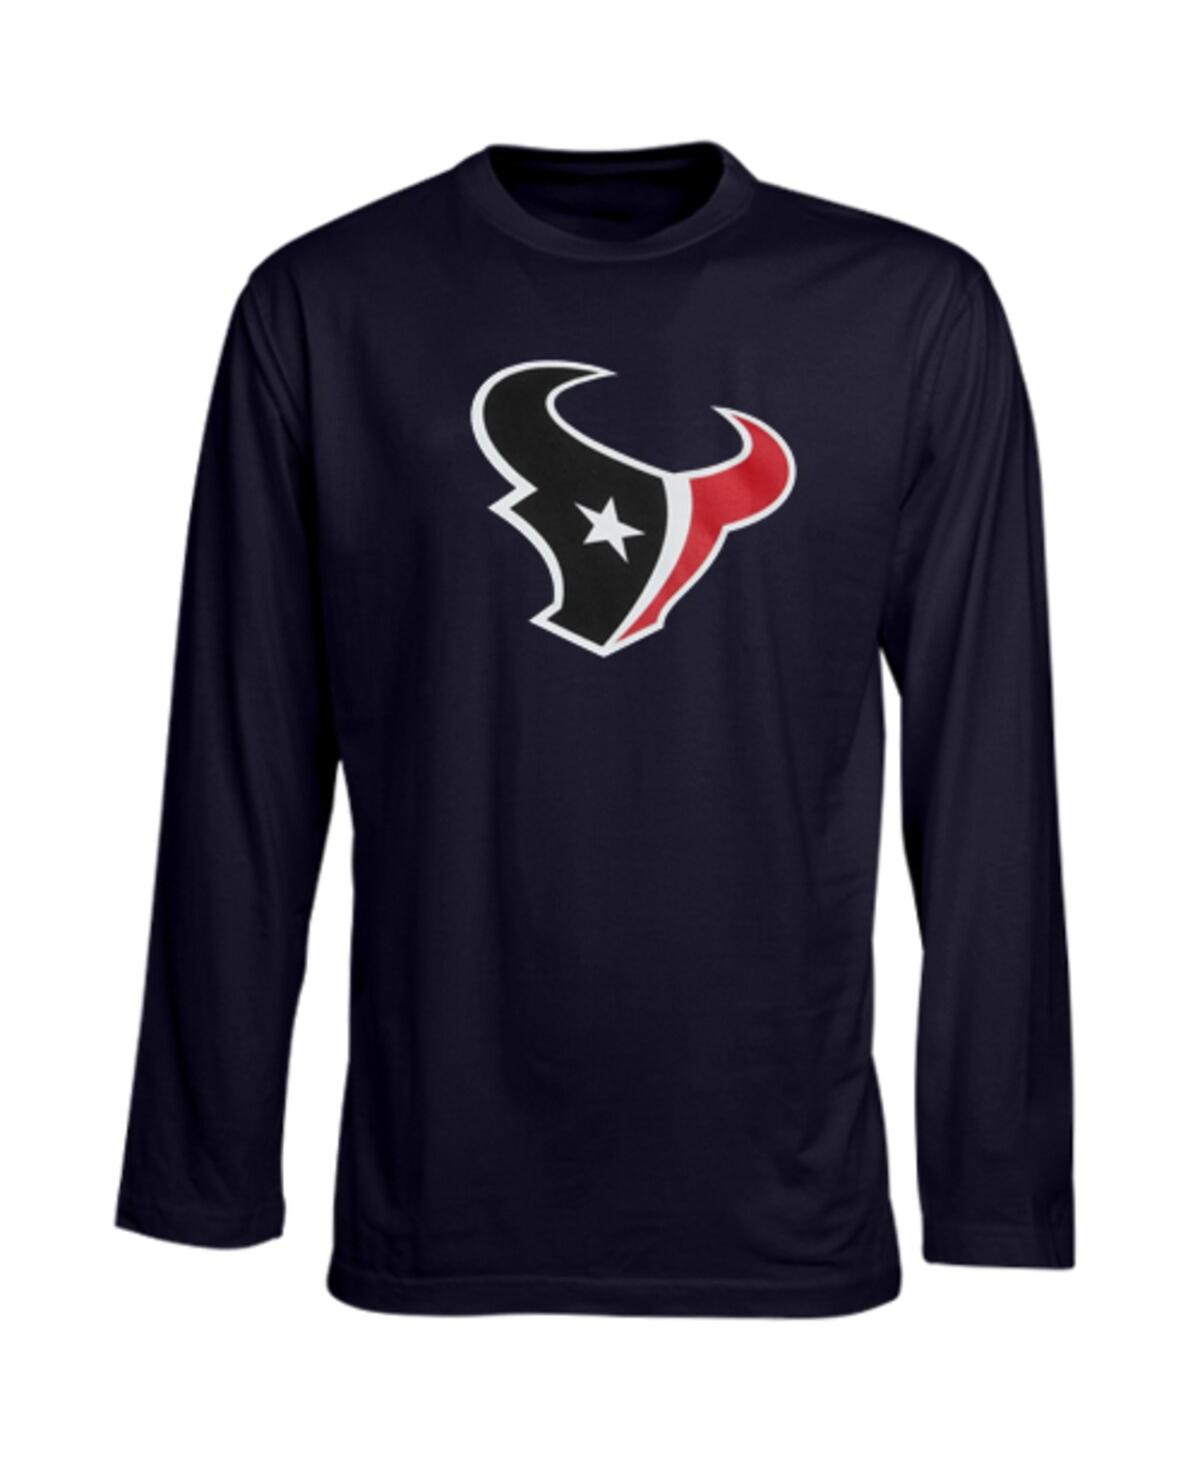 Outerstuff Babies' Preschool Boys And Girls Houston Texans Team Logo Navy Blue Long Sleeve T-shirt